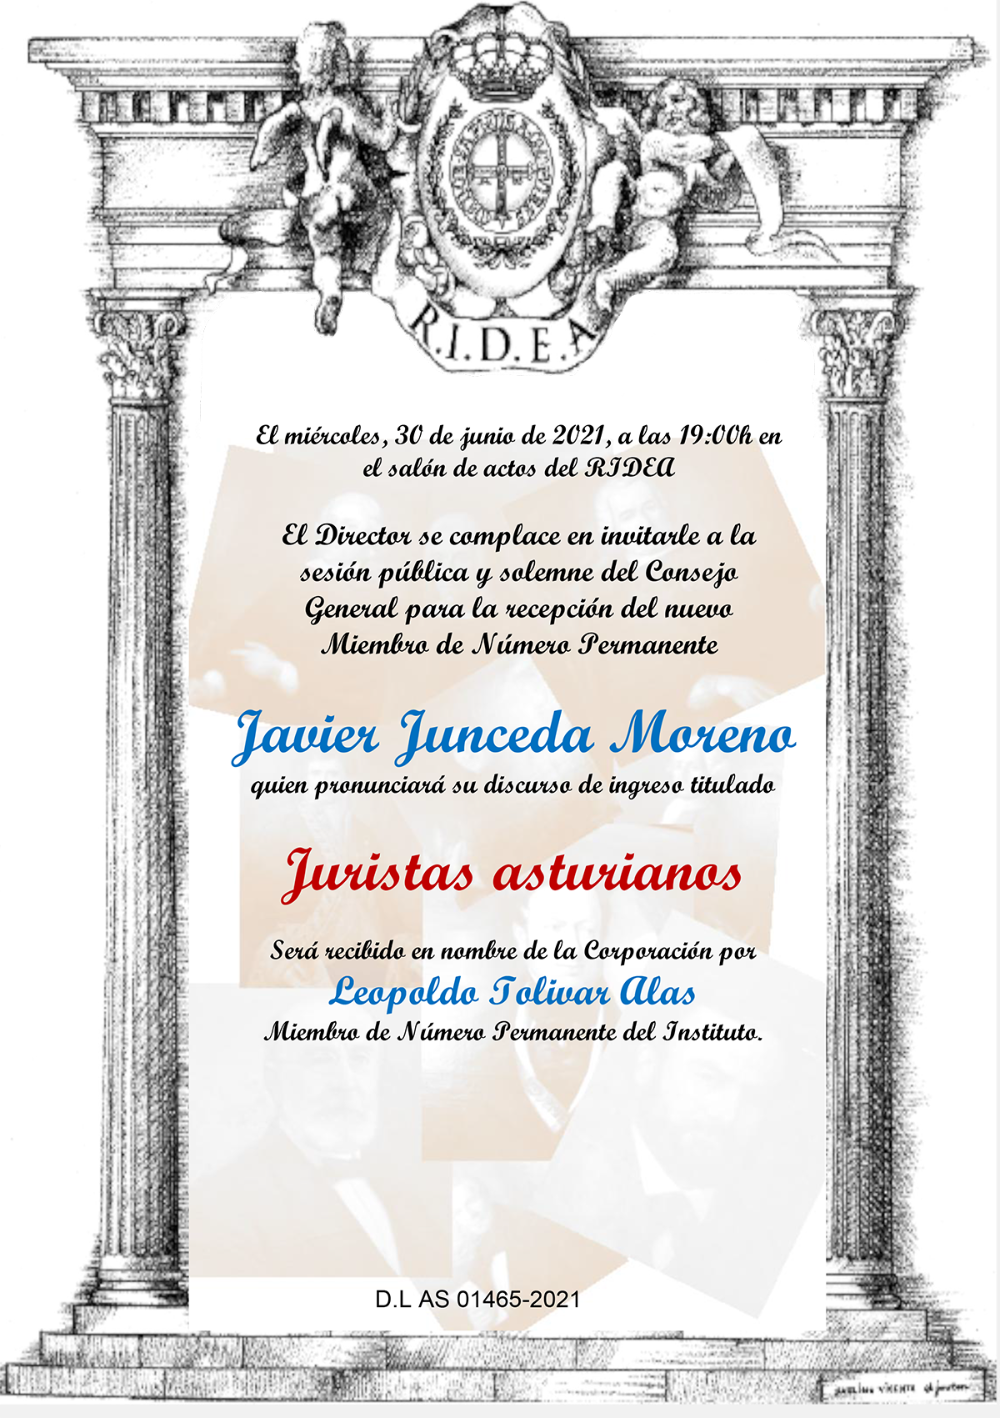 Imagen - Sesión pública y solemne del Consejo General para la recepción del nuevo Miembro de Número Permanente Javier Junceda Moreno